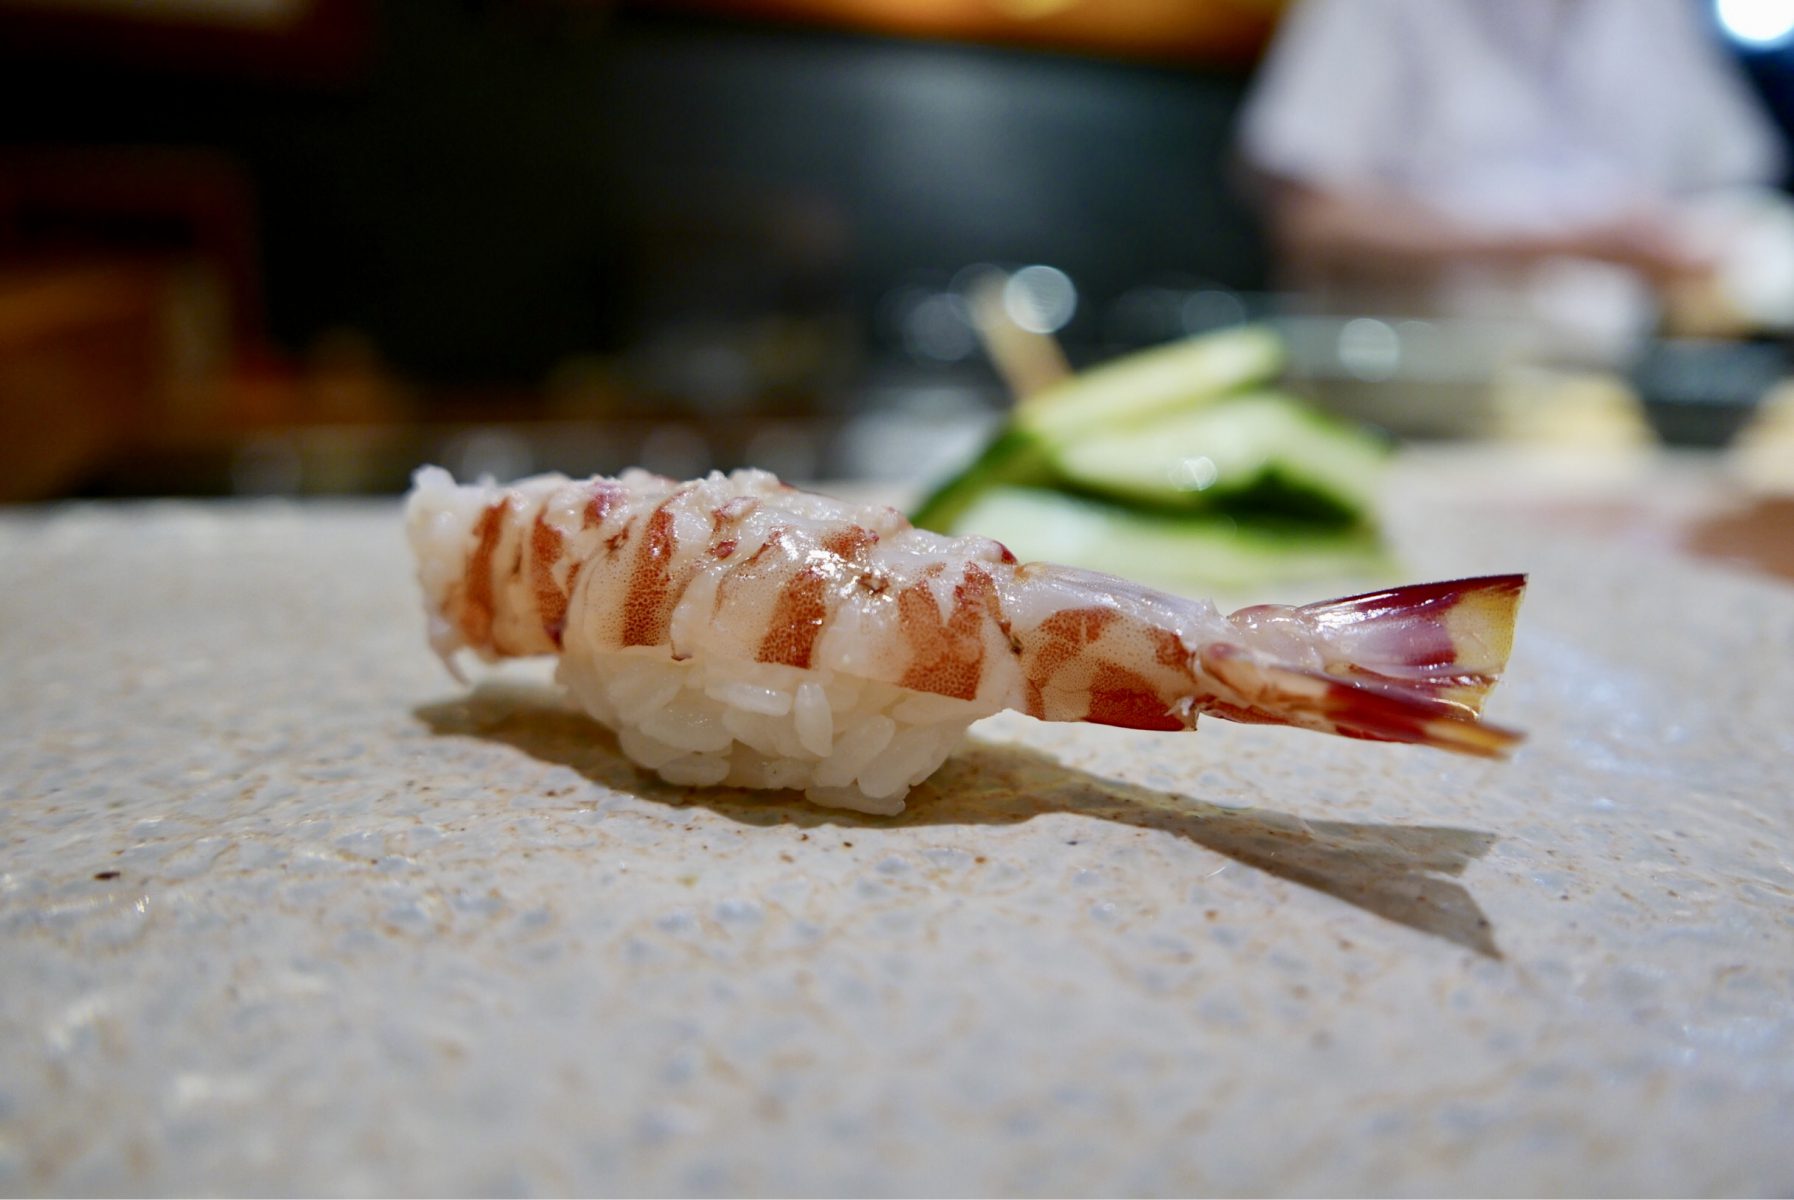 Imperial prawn sushi at Tenzushi, Fukuoka